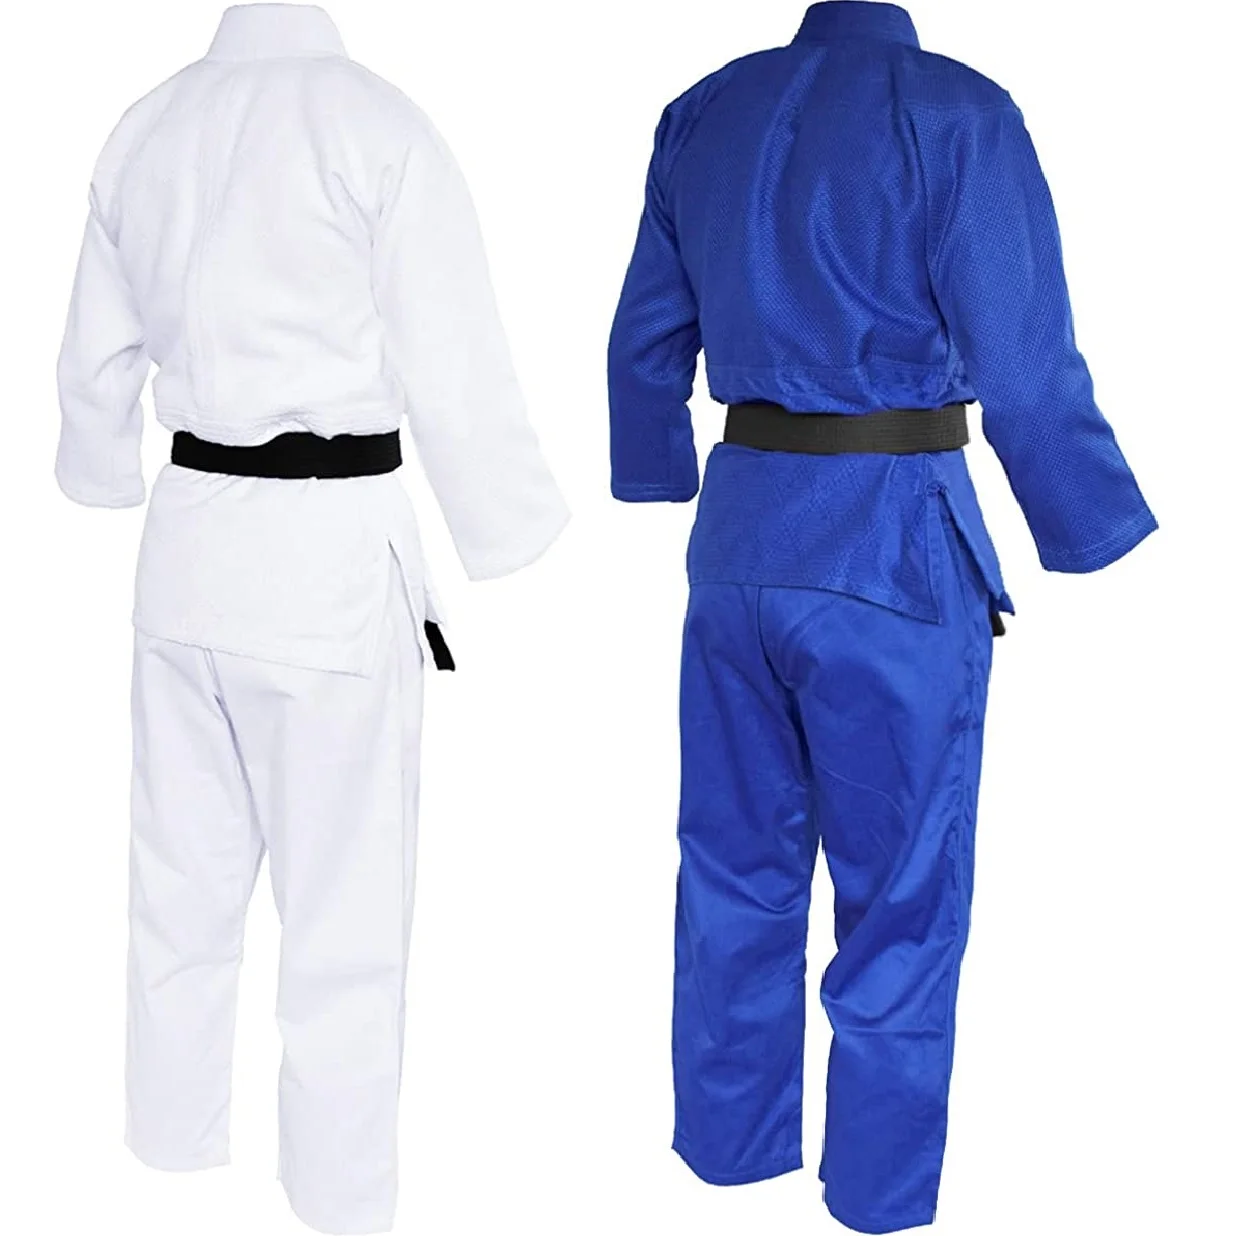 Uniforme de artes marciales profesional, Kimono azul y blanco de un solo tejido, perfecto para competición o entrenamiento con cinturón